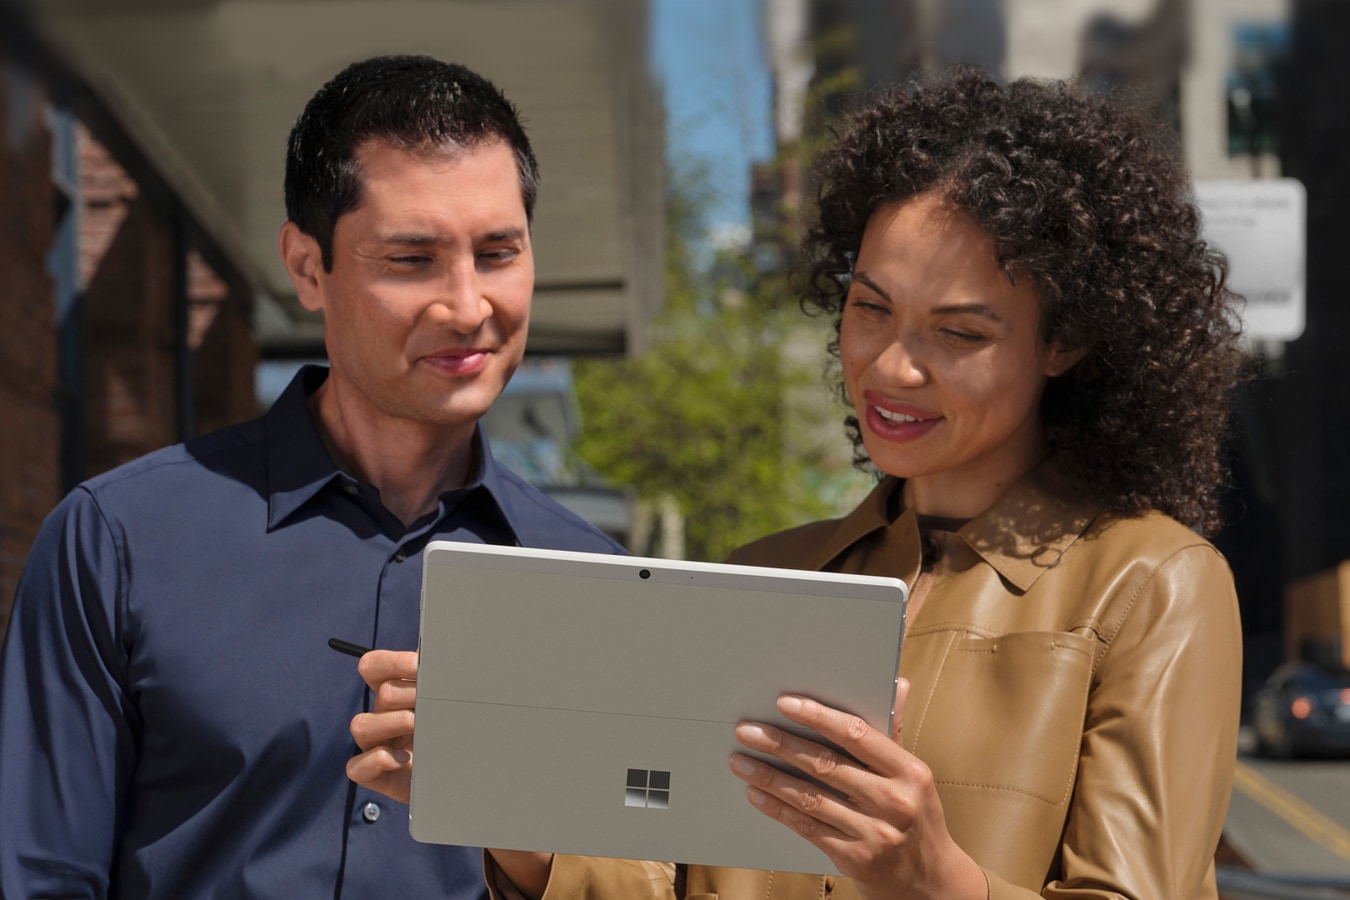 Deux personnes se tenant à l’extérieur sur un trottoir dans une ville métropolitaine voyant l’écran de sa Surface Pro X en mode tablette